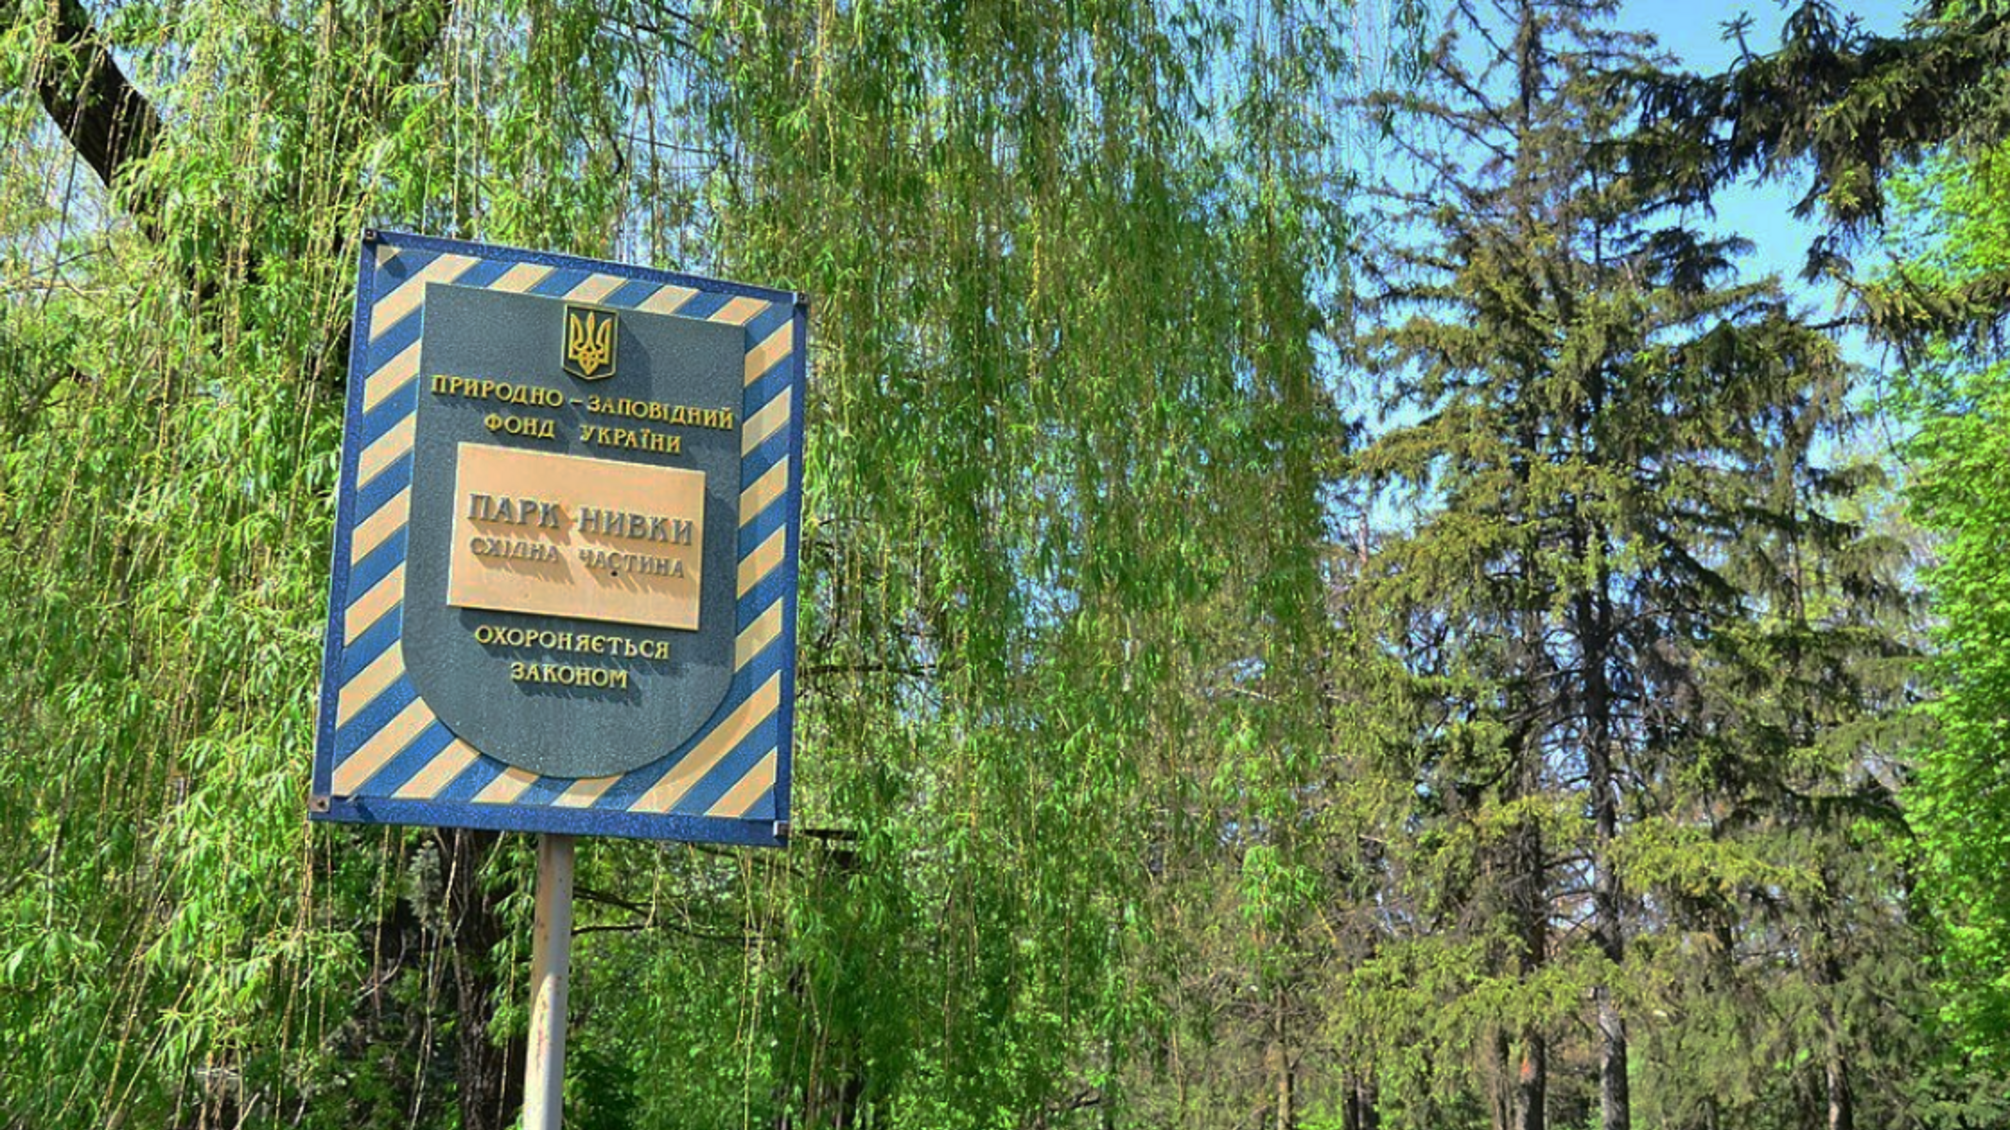 Дело о застройке парка 'Нивки' в Киеве: сообщено о подозрении еще двум лицам